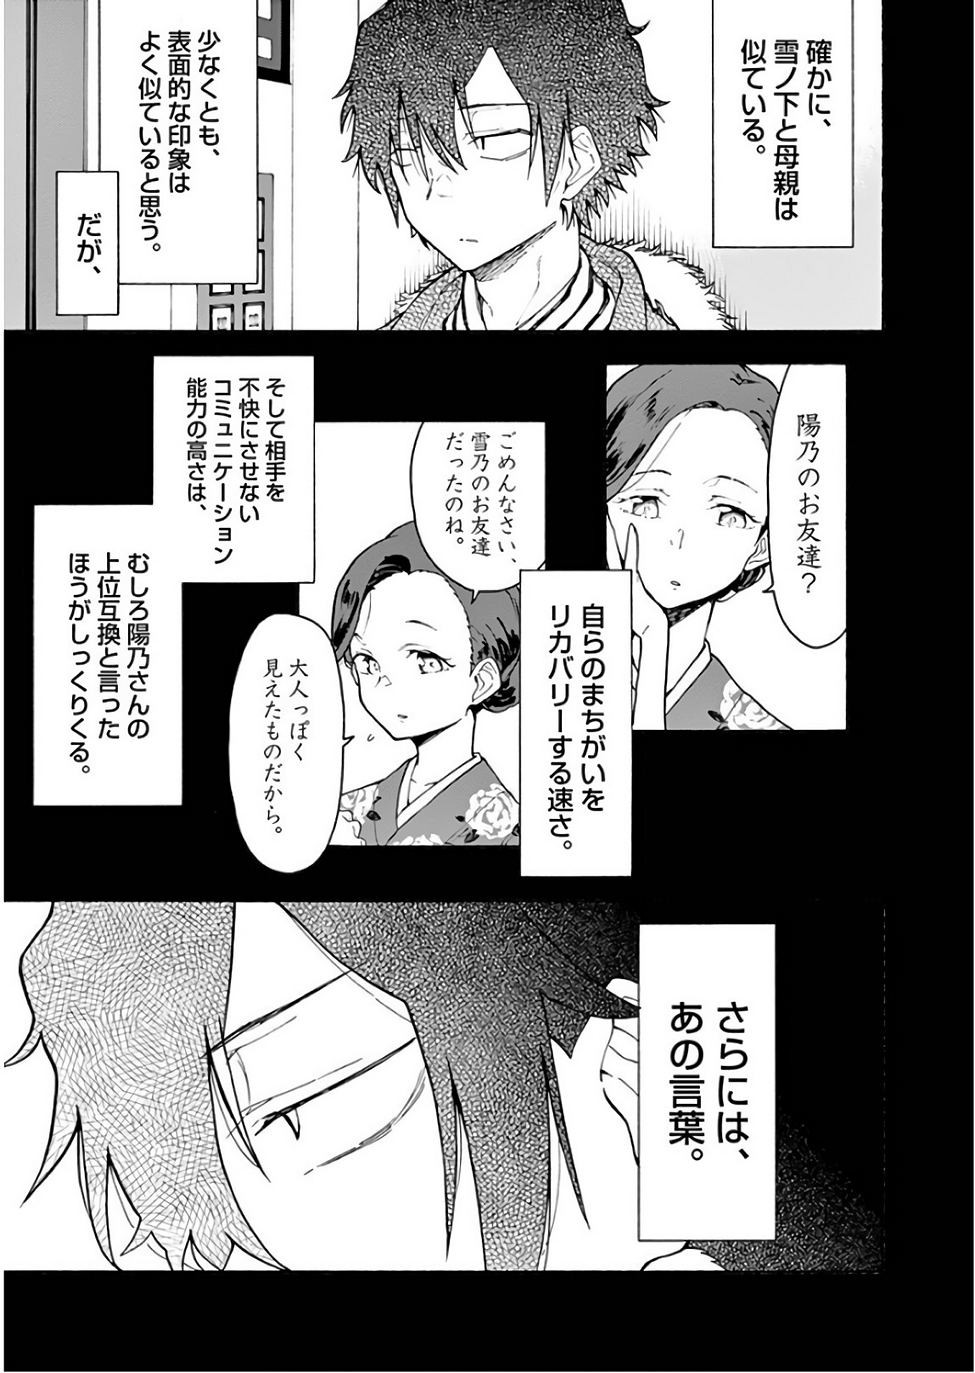 Yahari Ore no Seishun Rabukome wa Machigatte Iru. @ Comic - Chapter 74 - Page 33